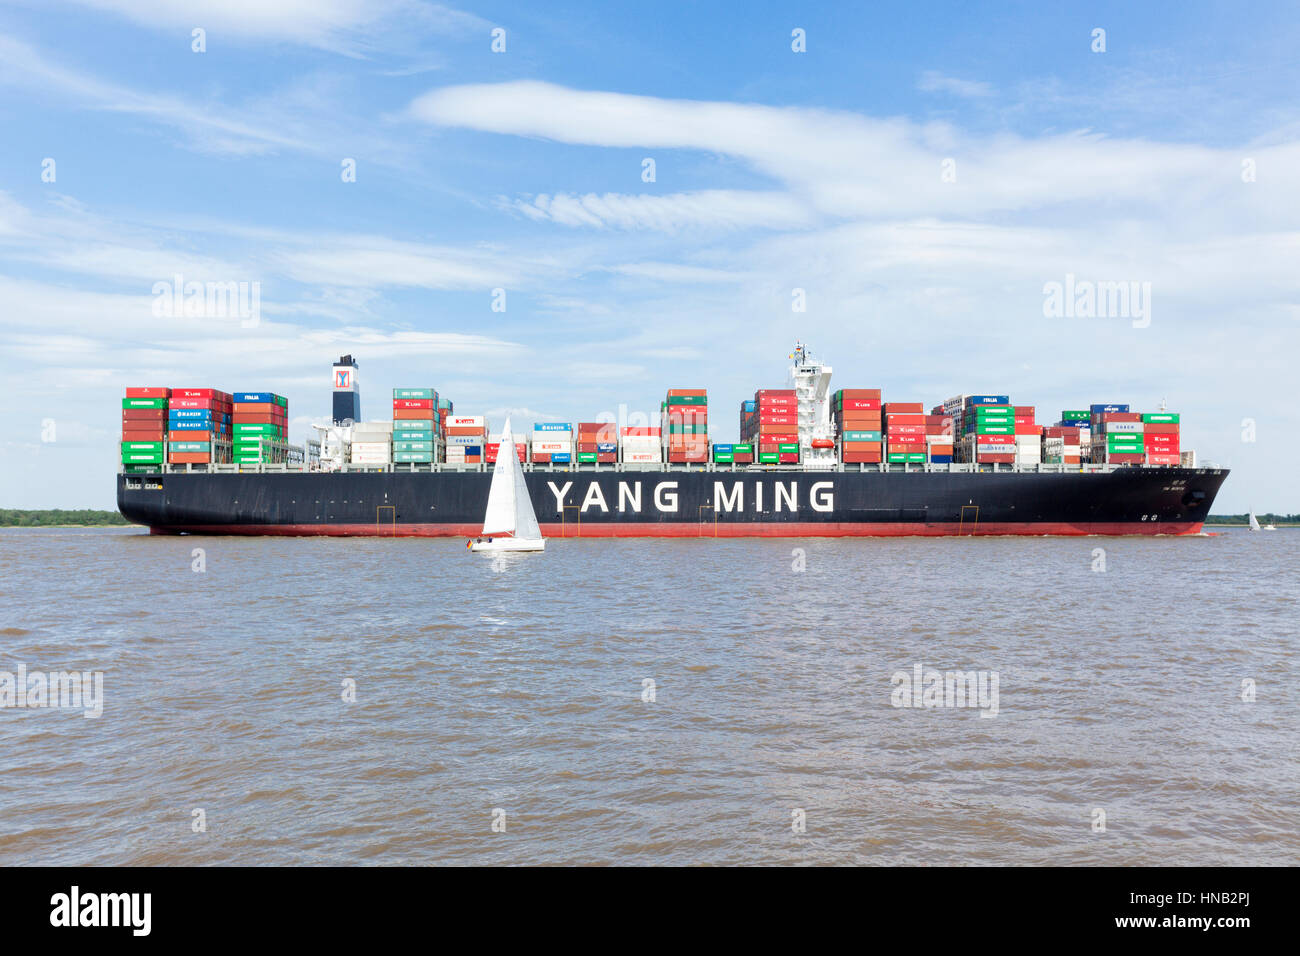 Stade, Deutschland - 22. Mai 2016: Ultra große Containerschiff YM Wert an der Elbe in der Nähe von Hamburg, ein kleines Segelboot vorbei. YM Wert kann 14,0 halten Stockfoto